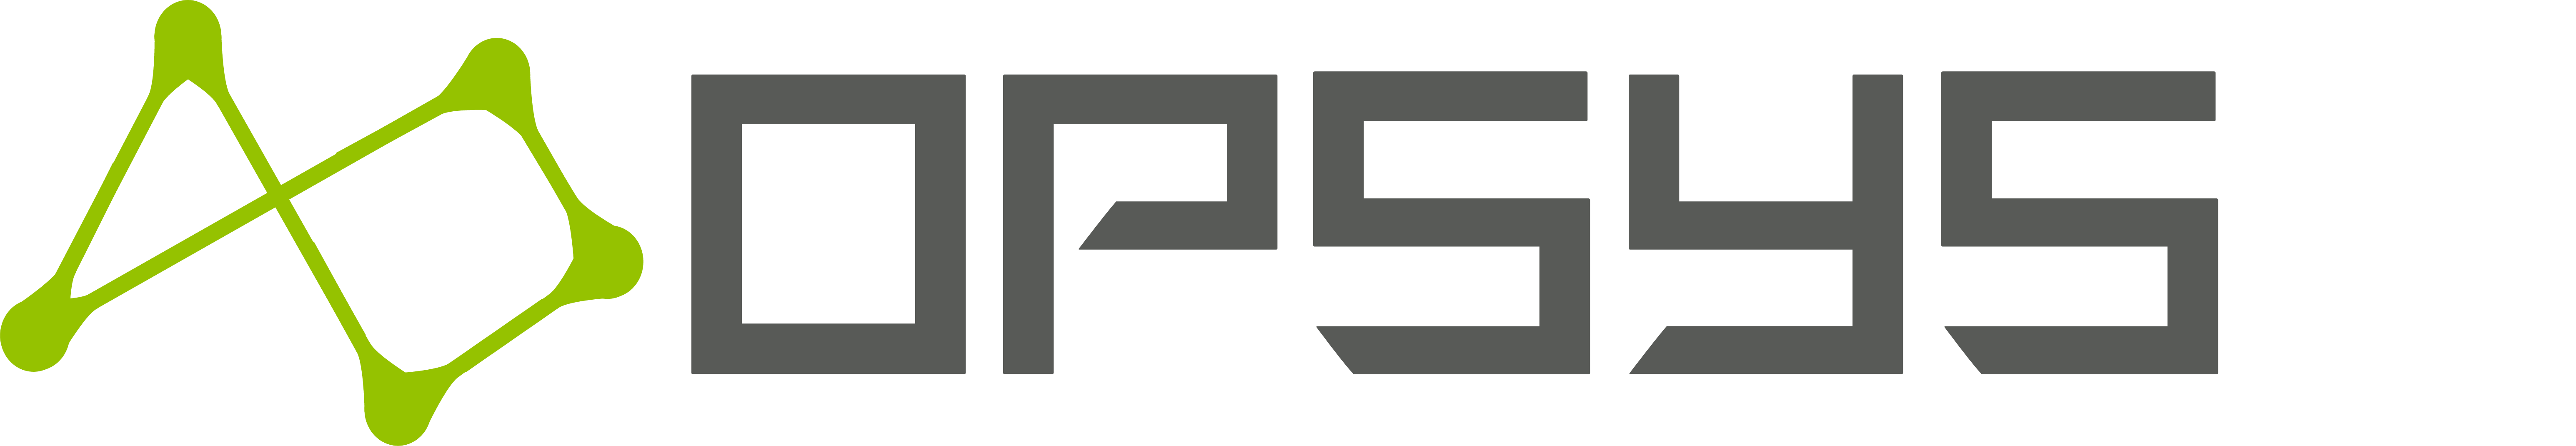 Opsys logo